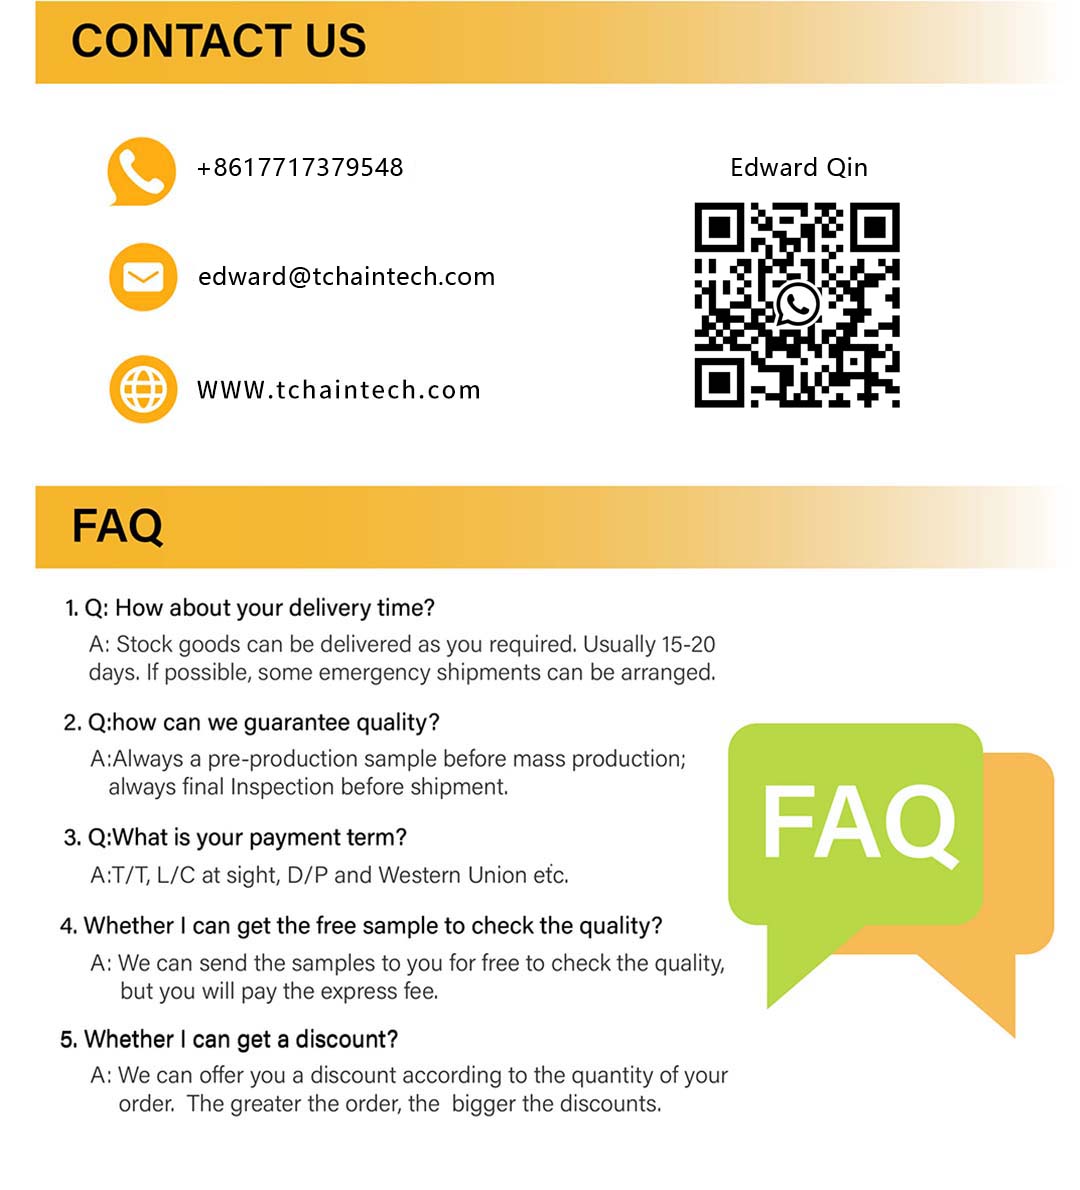 Tanchain FAQ